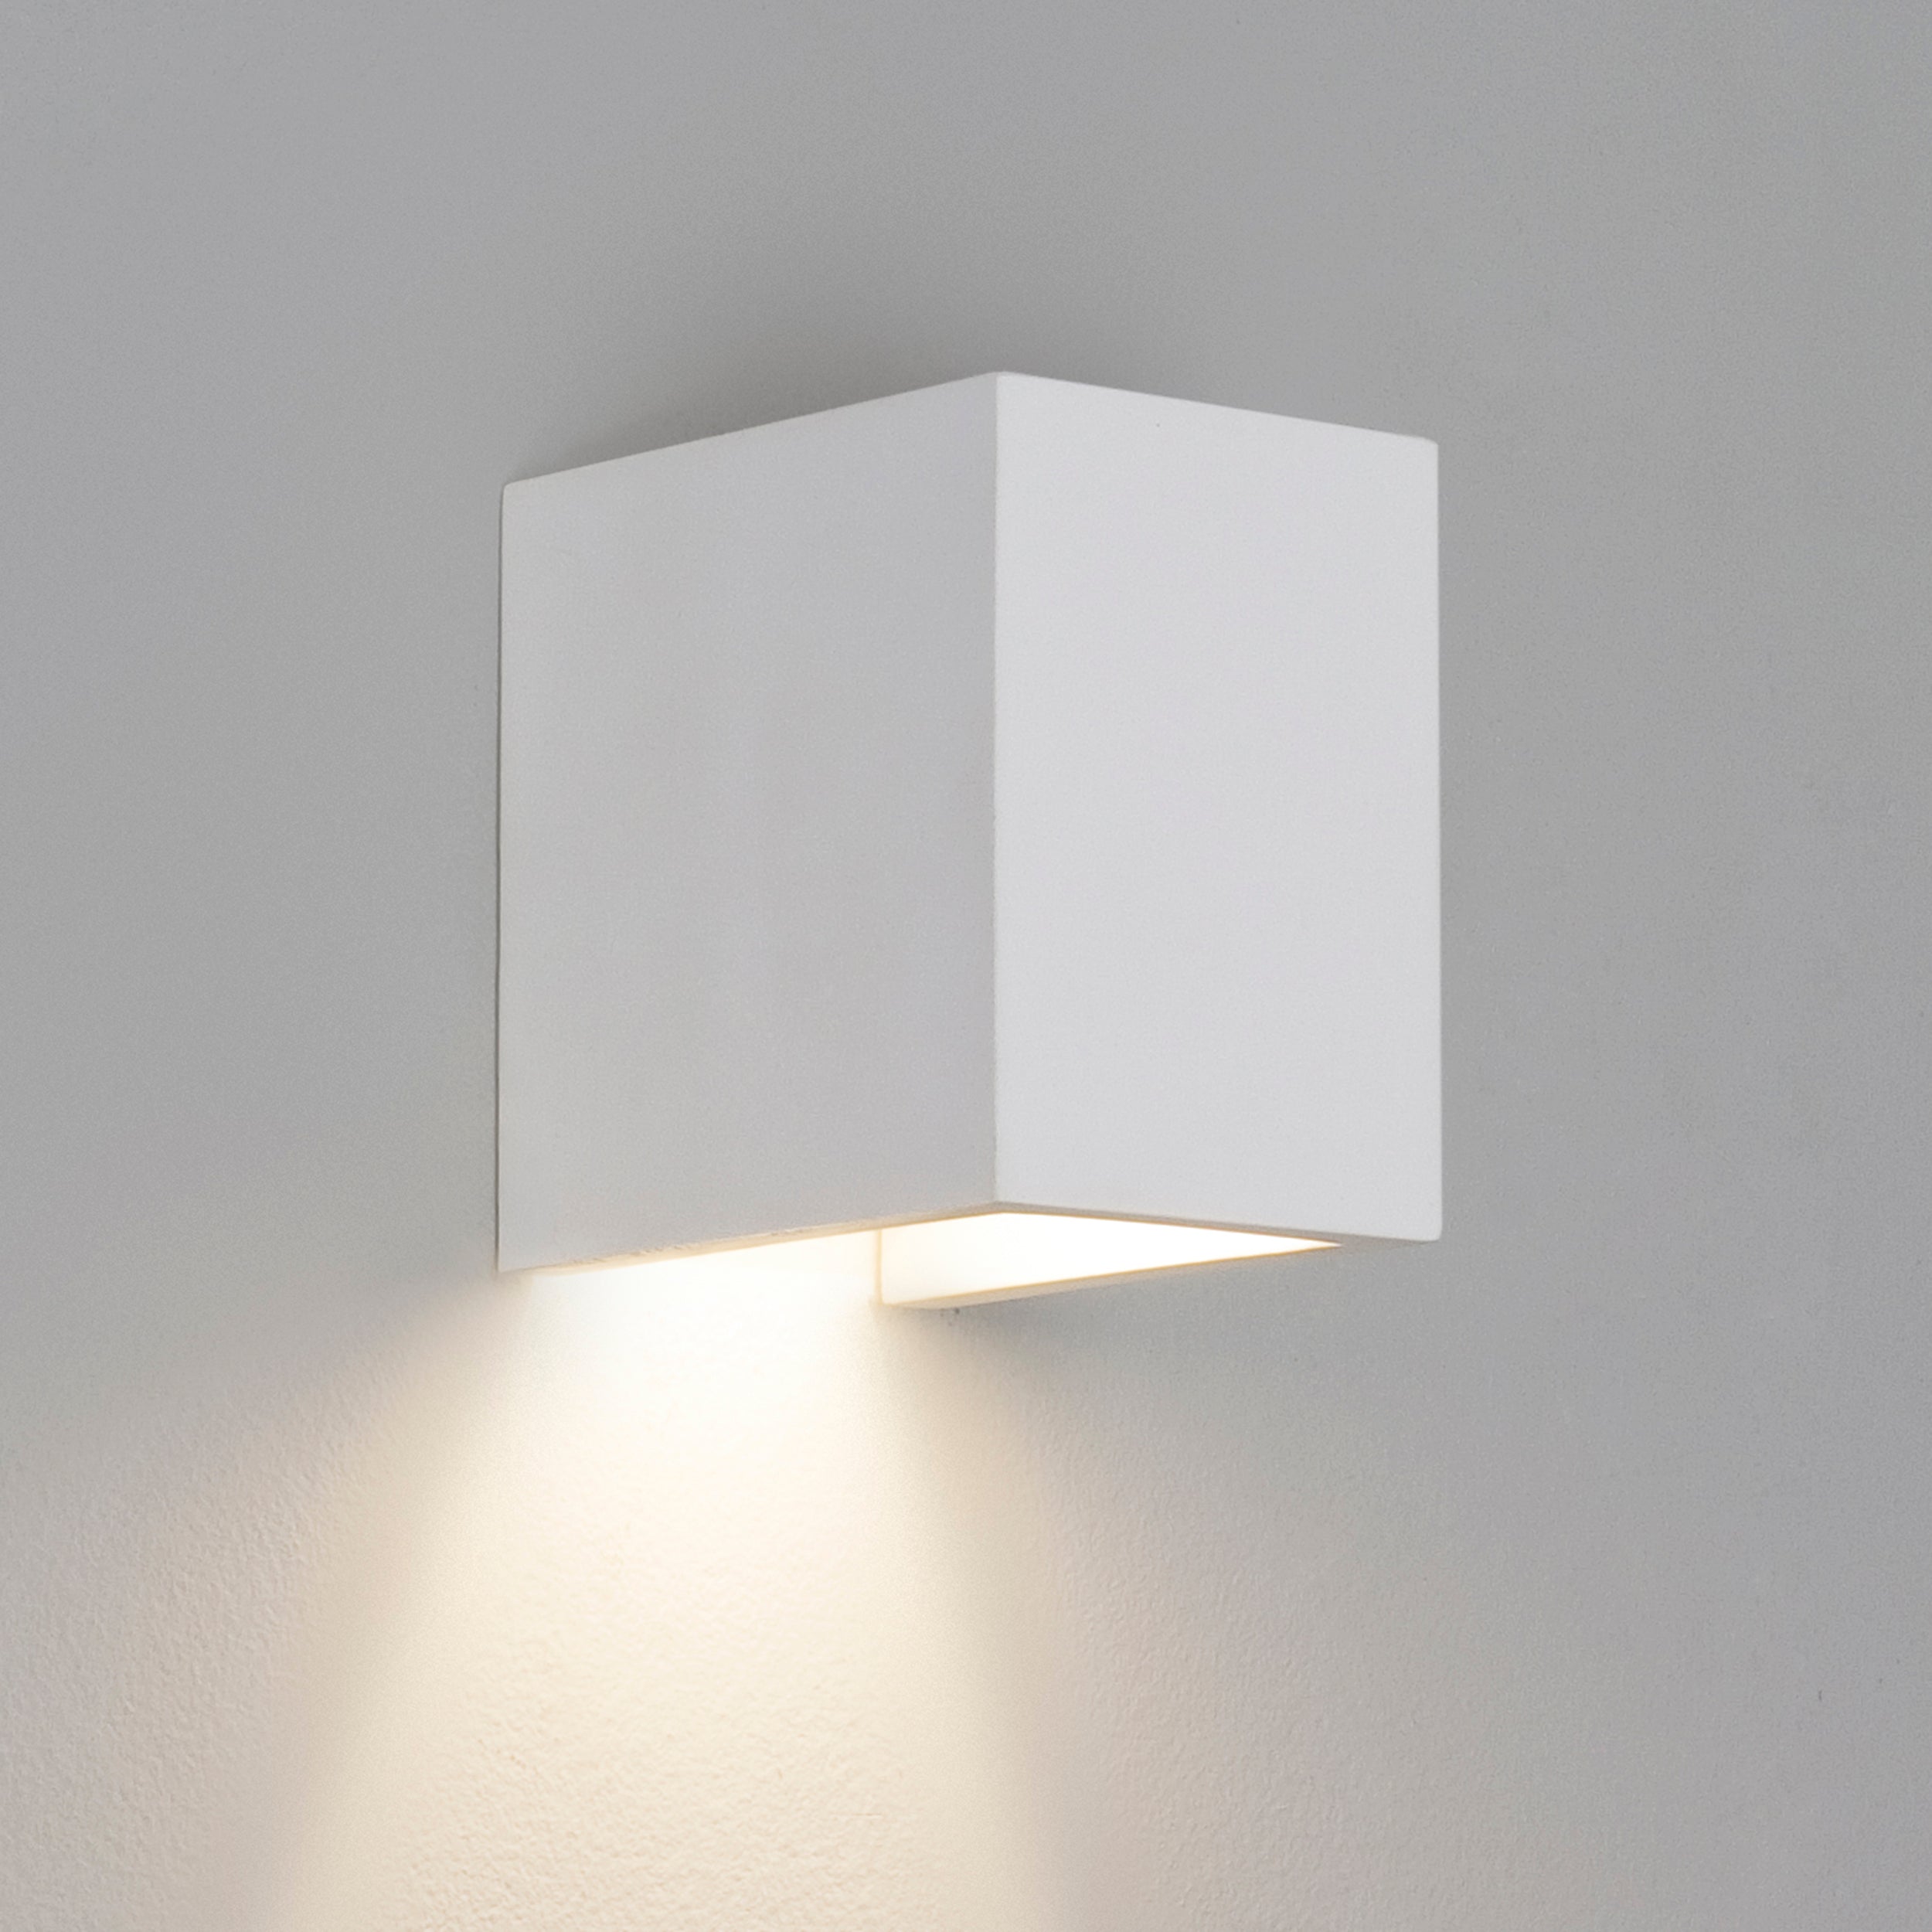 En lille hvid og enkel væglampe i firkantet form fremstillet i gips med nedadgående lys.